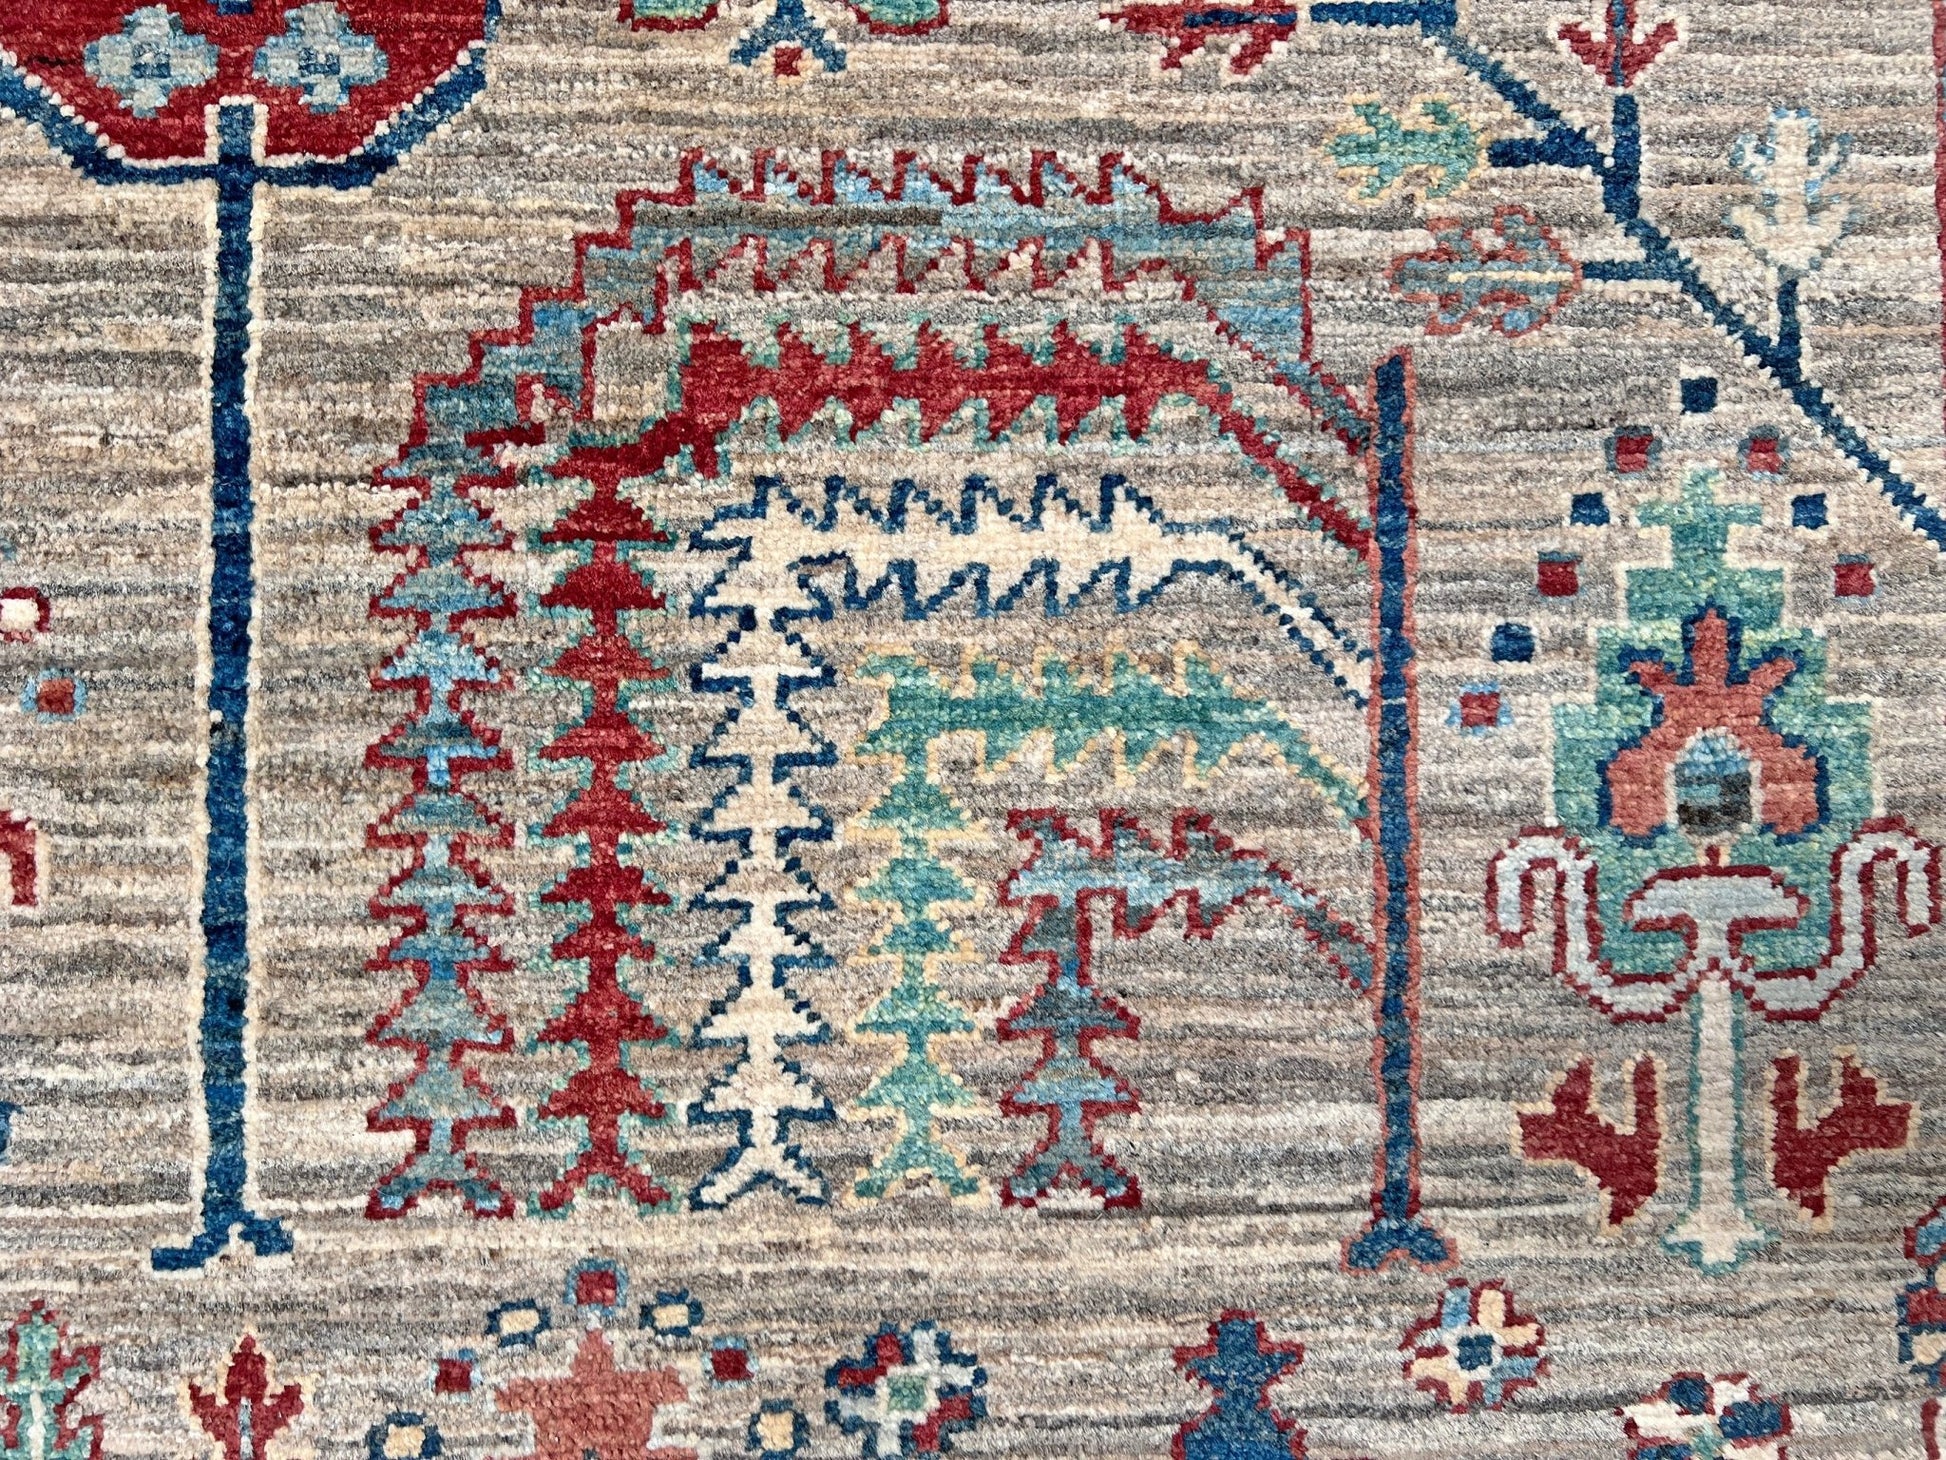 Tree of life contemporary rug. Luxury handmade rug shop palo alto. Oriental rug shop san francisco bay area.